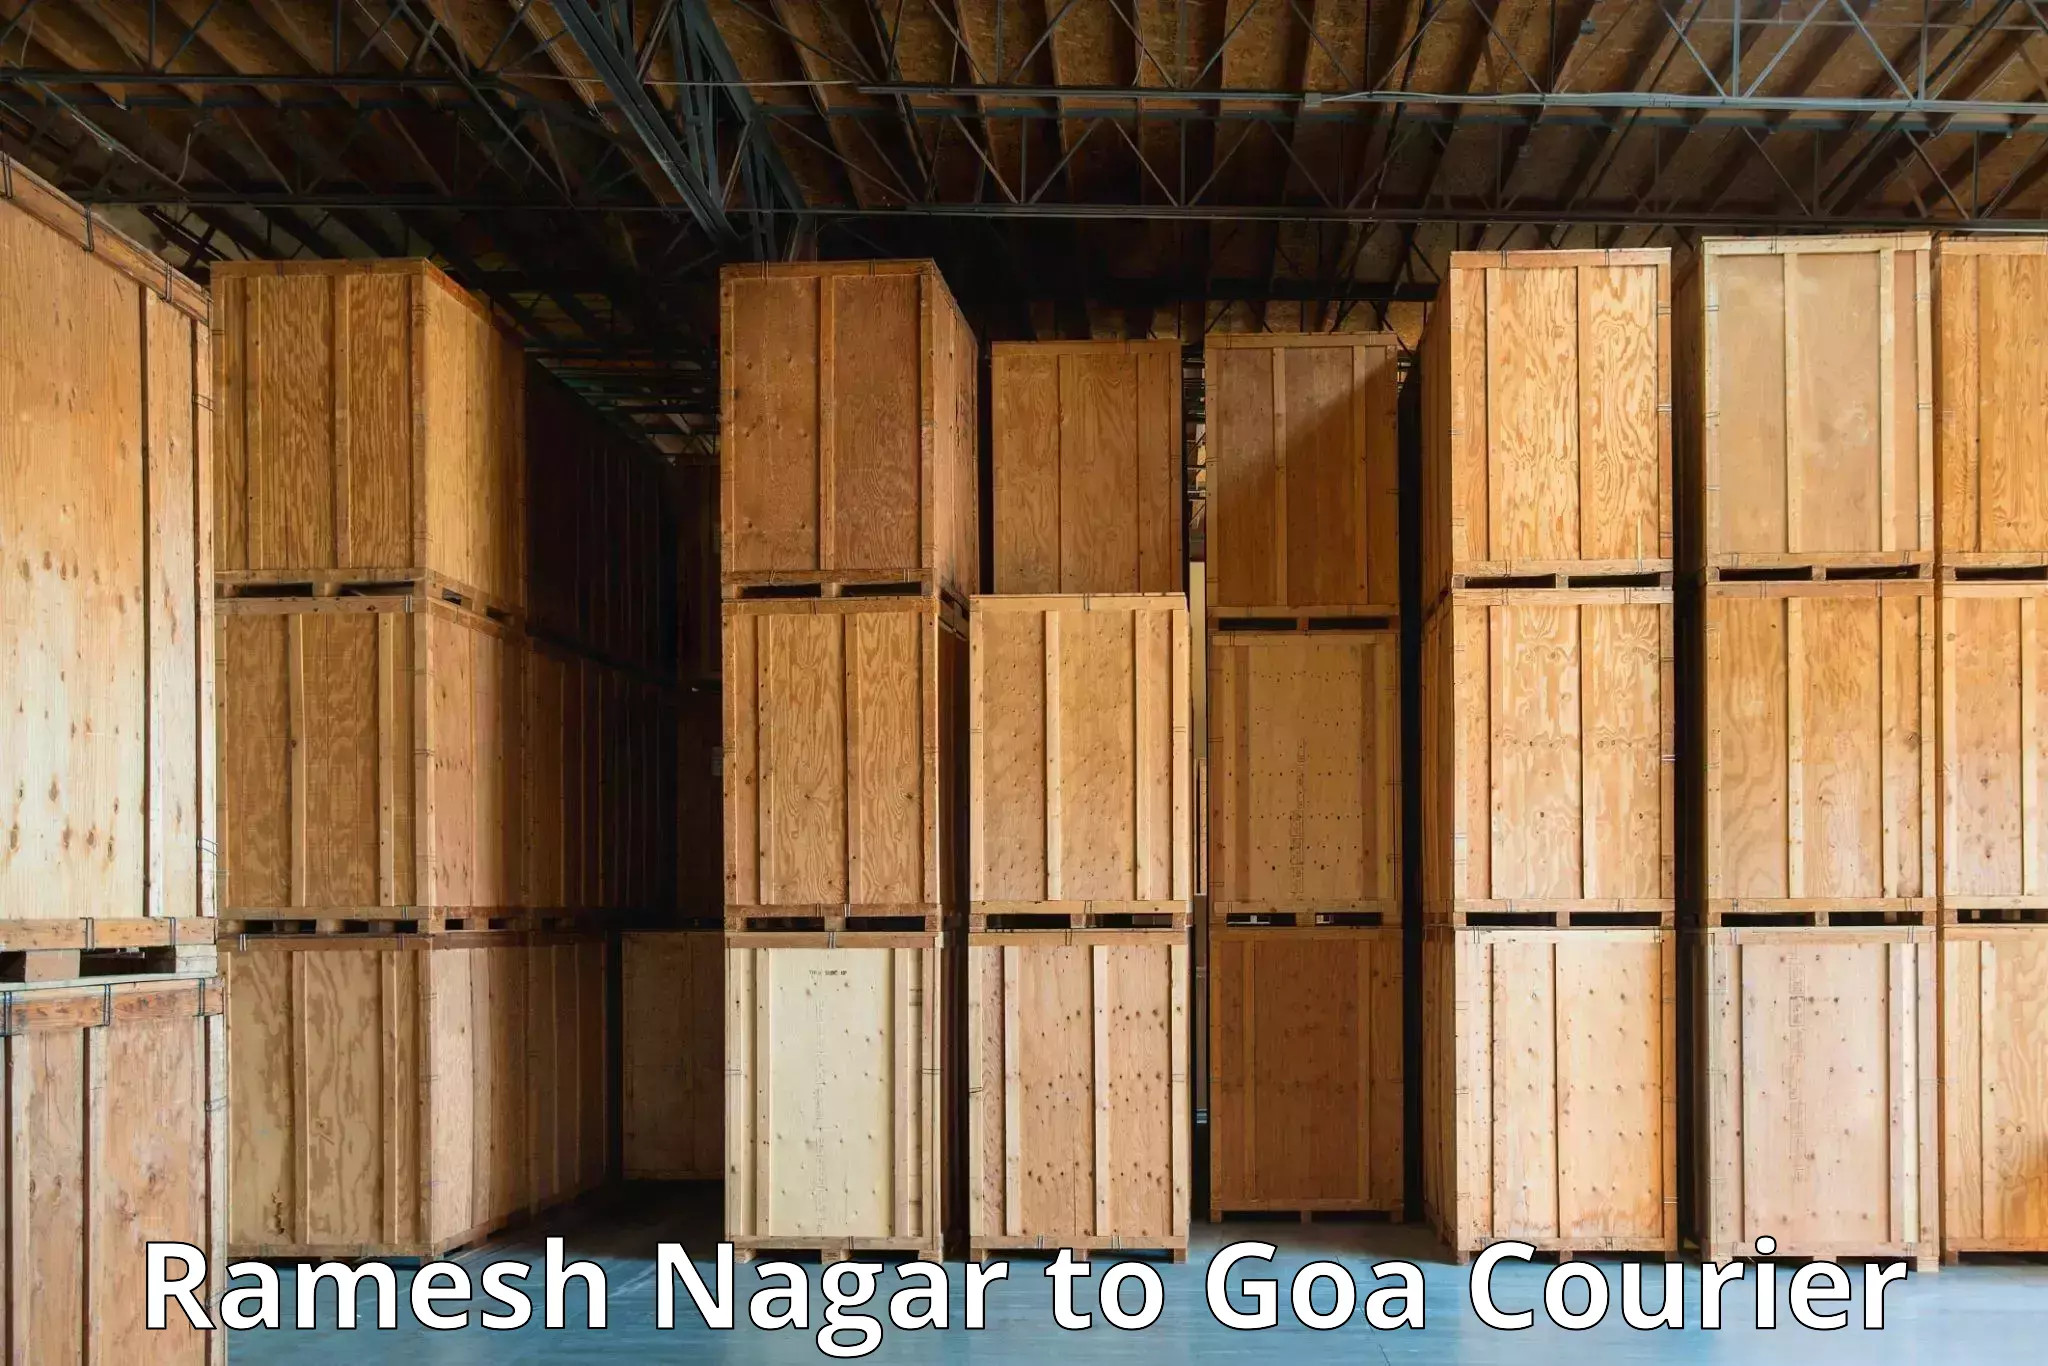 Digital courier platforms Ramesh Nagar to Vasco da Gama